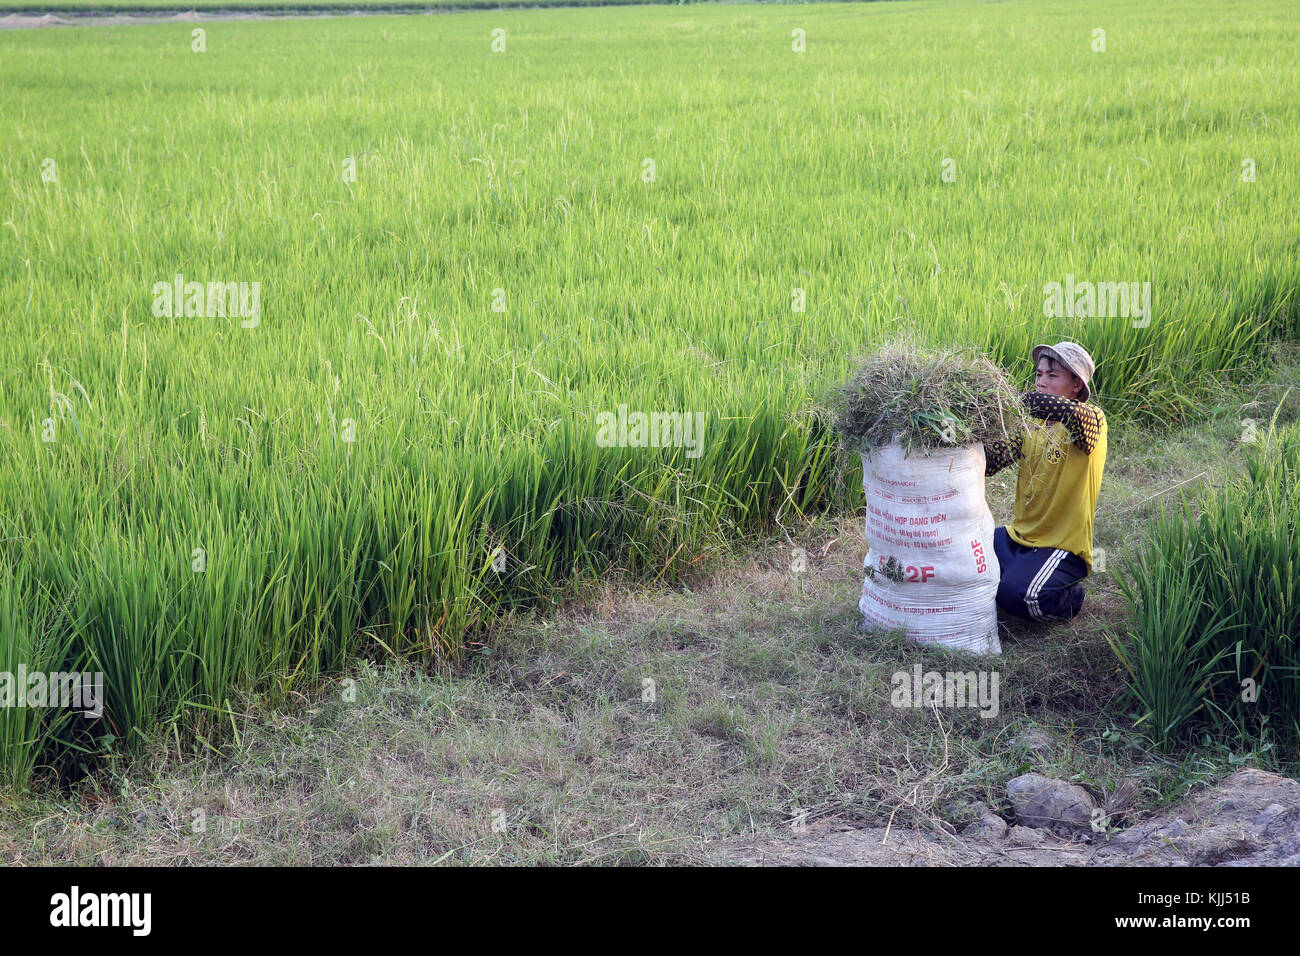 Les agriculteurs vietnamiens travaillant dans son champ de riz. Thay Ninh. Le Vietnam. Banque D'Images